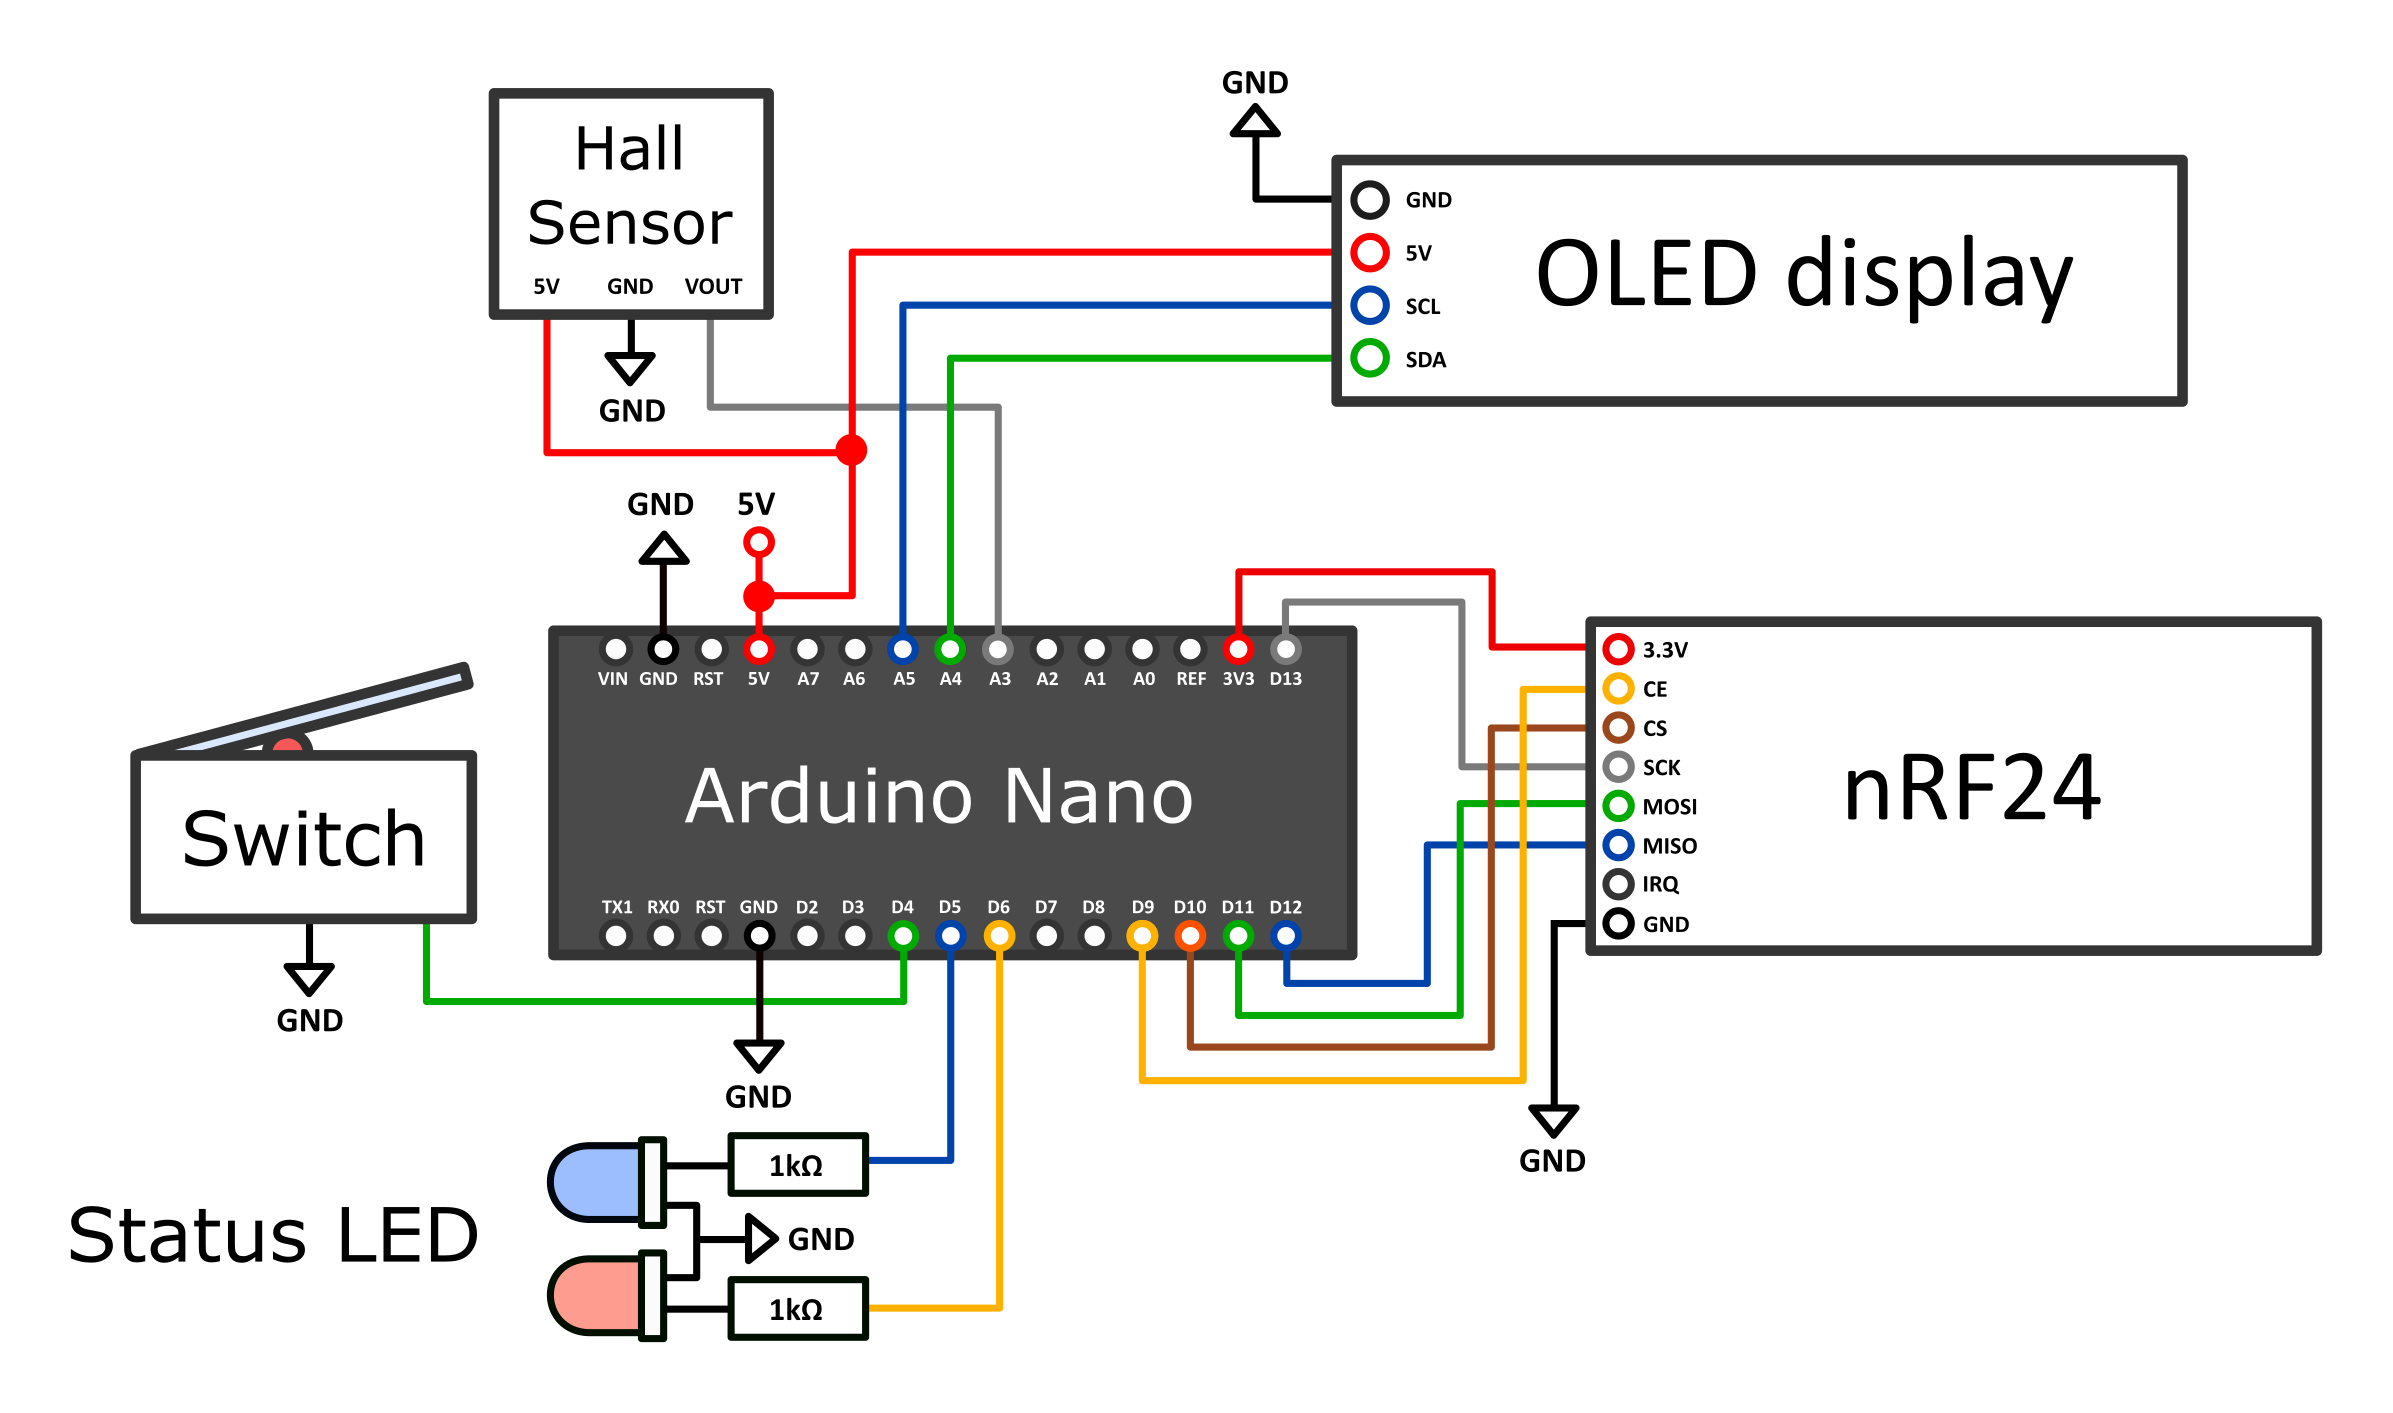 Датчик холла ардуино. Nrf24l01 Arduino экран. Схема подключения датчика холла к ардуино нано. Датчик холла на ардуино нано. Как подключить датчик холла